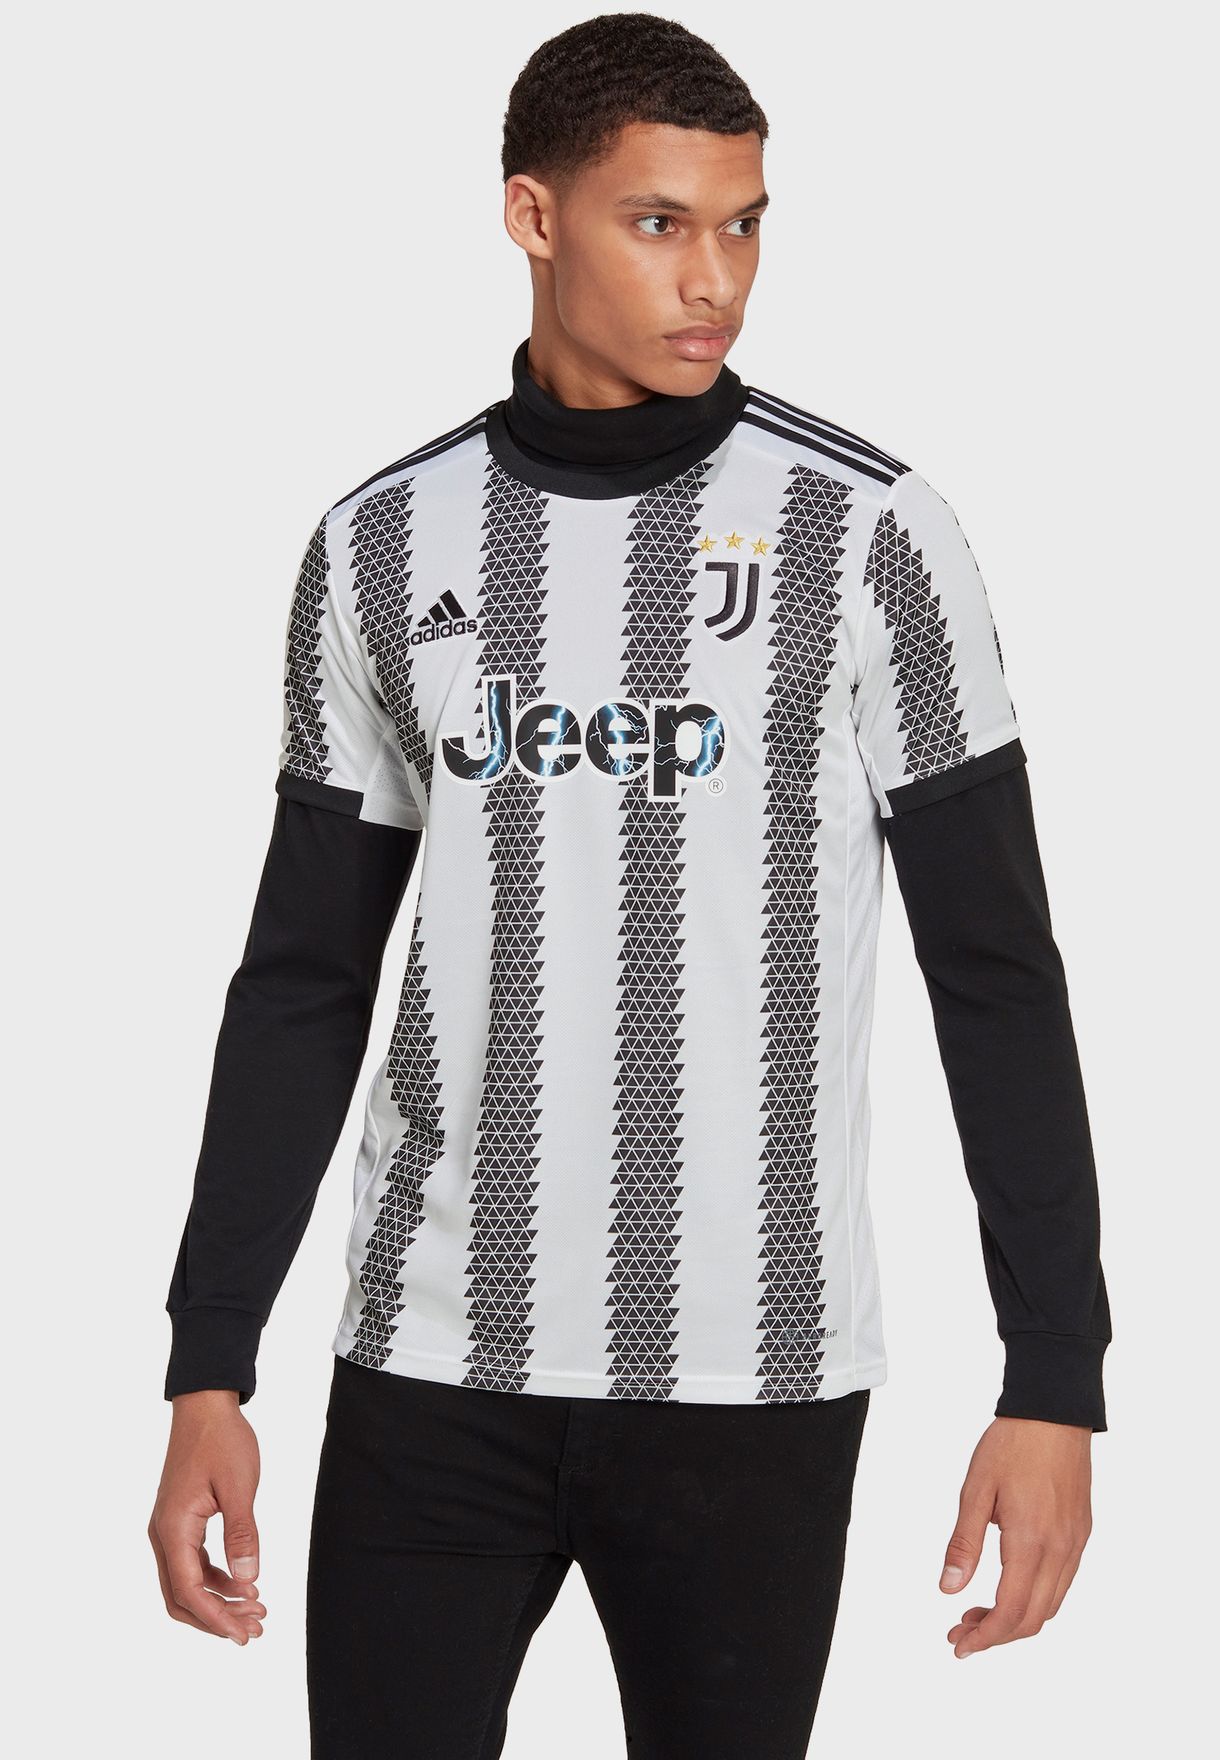 Juventus Home Jersey